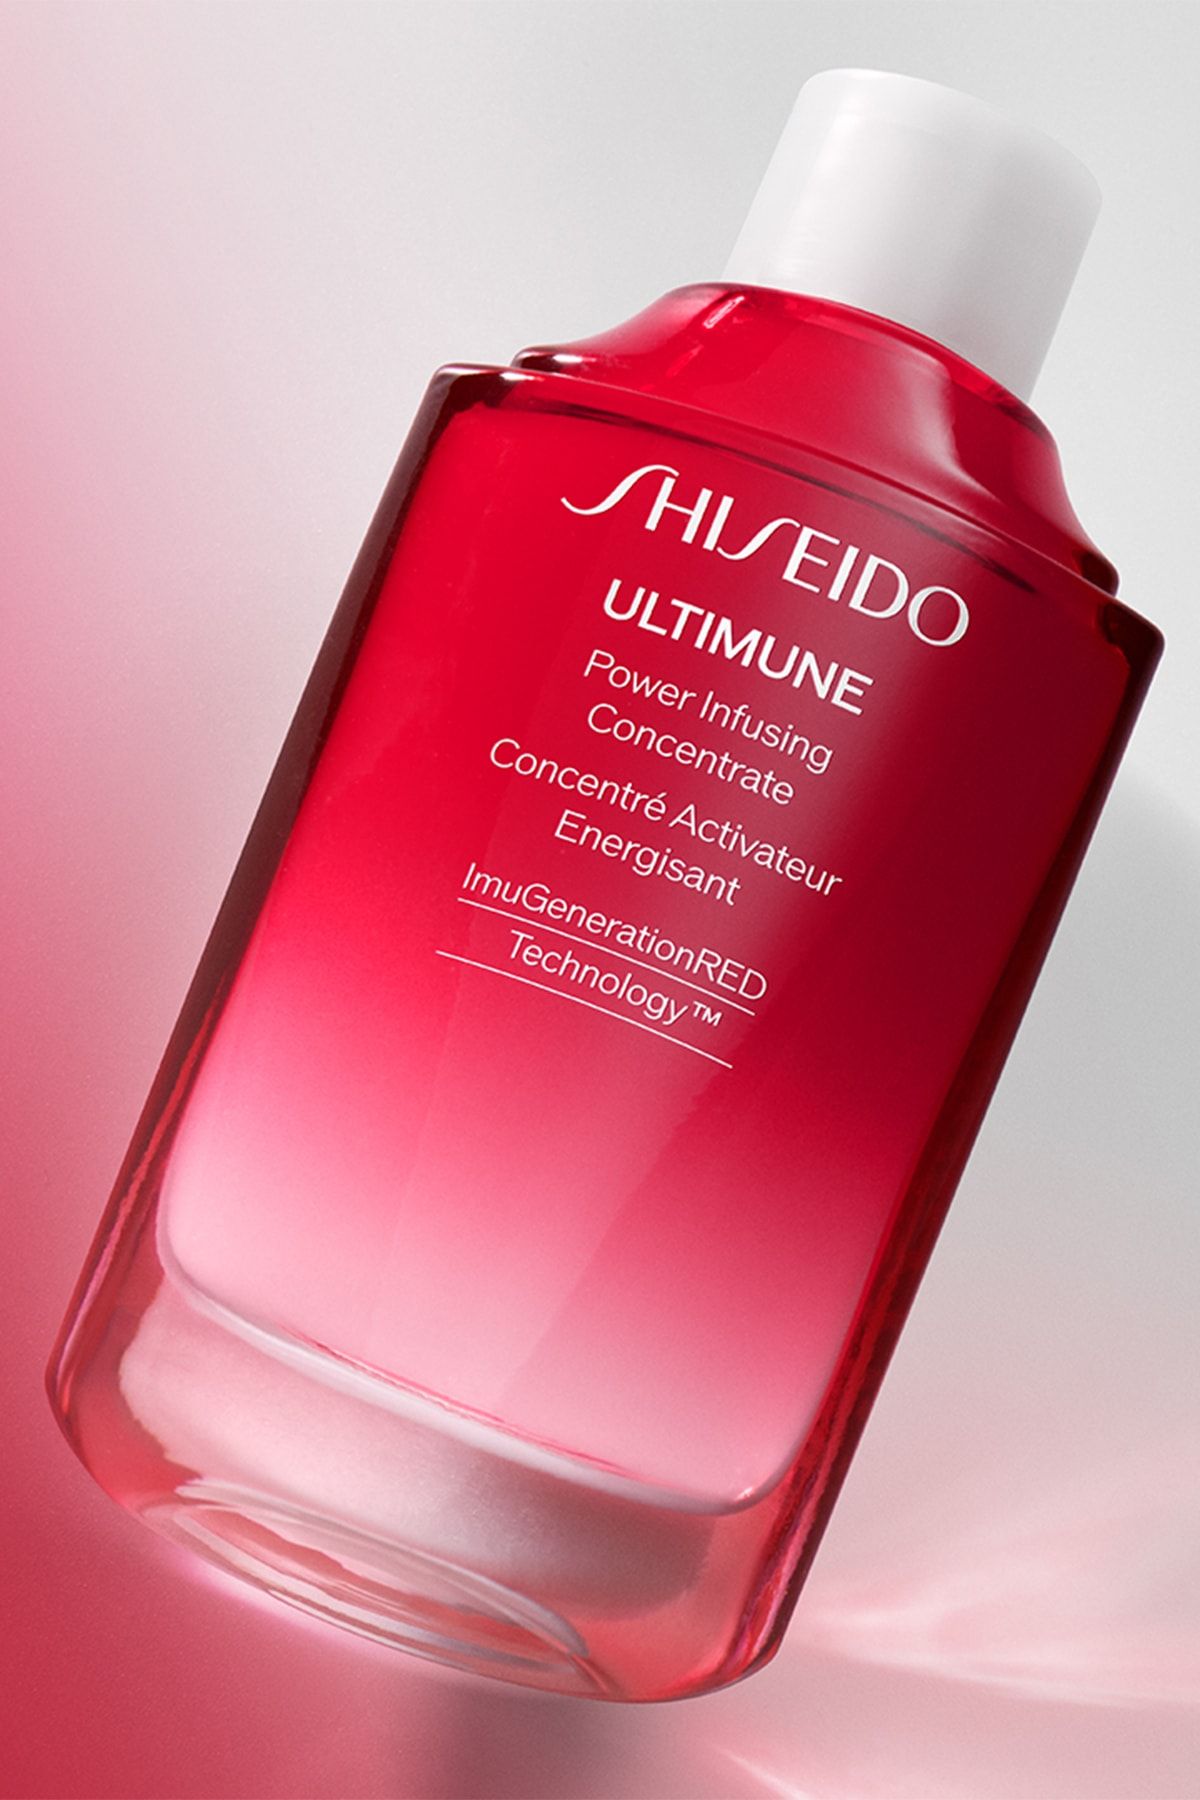 Концентрат Shiseido Ultimune Power infusing Concentrate. Shiseido Ultimune Power infusing Concentrate 3.0 Refill. Ultimate Power infusing Concentrate 3.0. Рефил Ultimune концентрат восстанавливающий как пользоваться. Shiseido power infusing concentrate